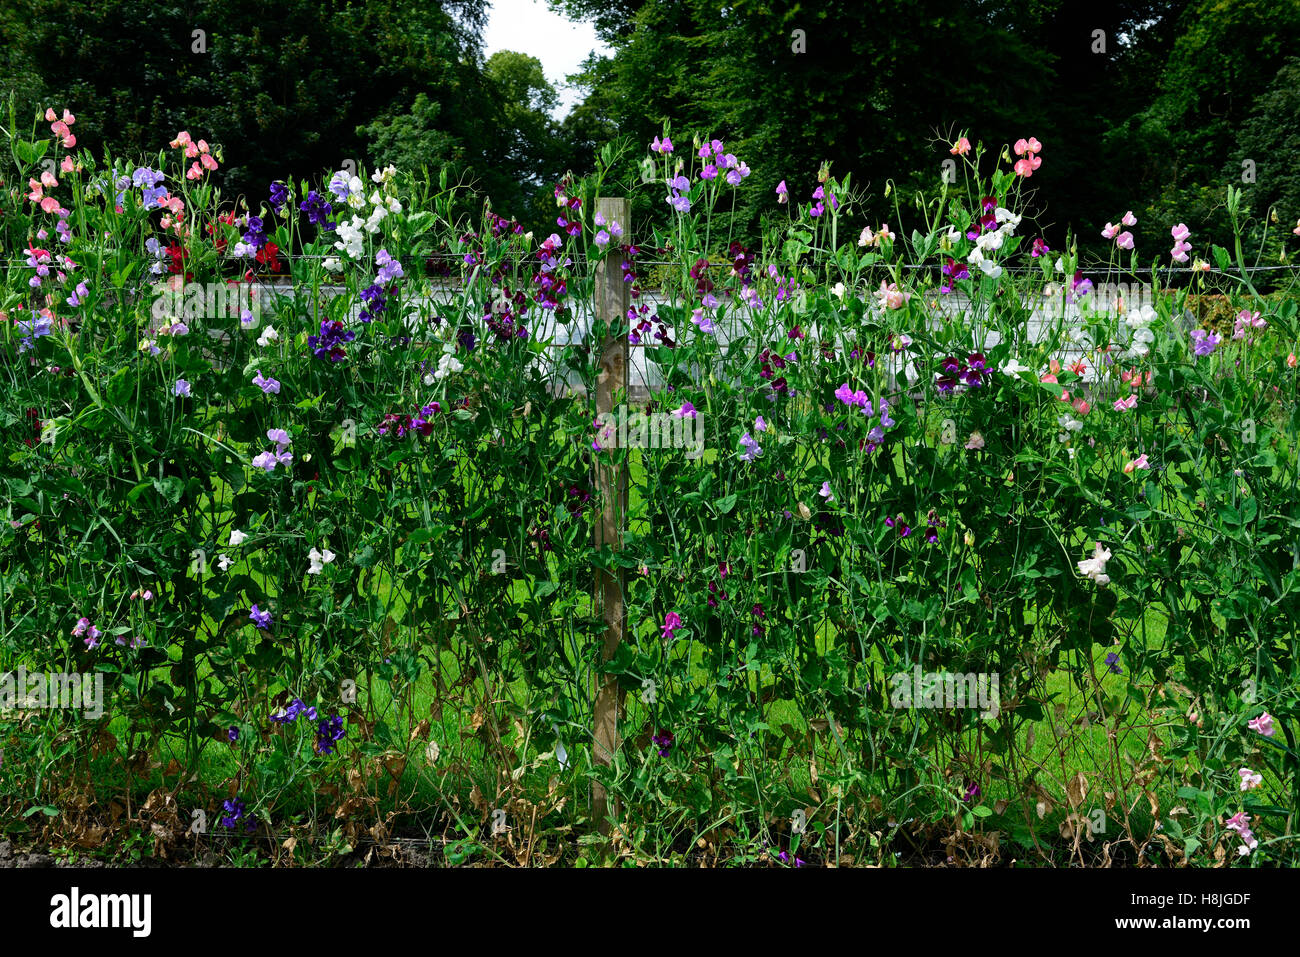 Lathyrus piselli dolci crescono piselli crescendo recinzione impianto di scherma supporta frame frame estate annuari scalatori di fiori di arrampicata Foto Stock